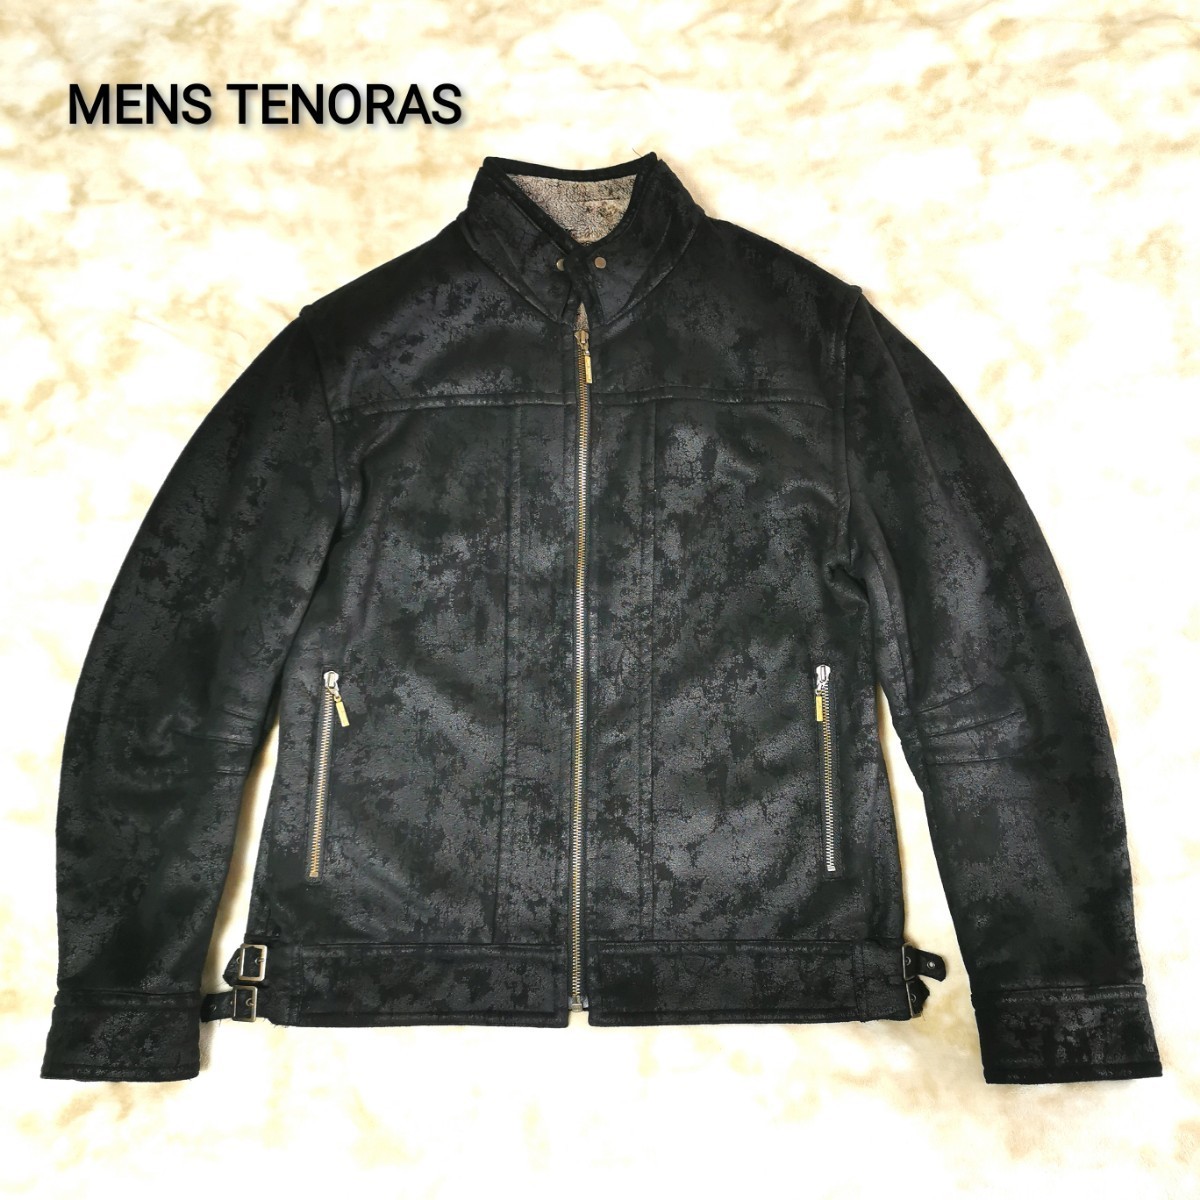 メンズティノラス(MEN'STENORAS) フロッキー濃淡加工 全面ボア ライダース ジャケット サイズL ブラック_画像2